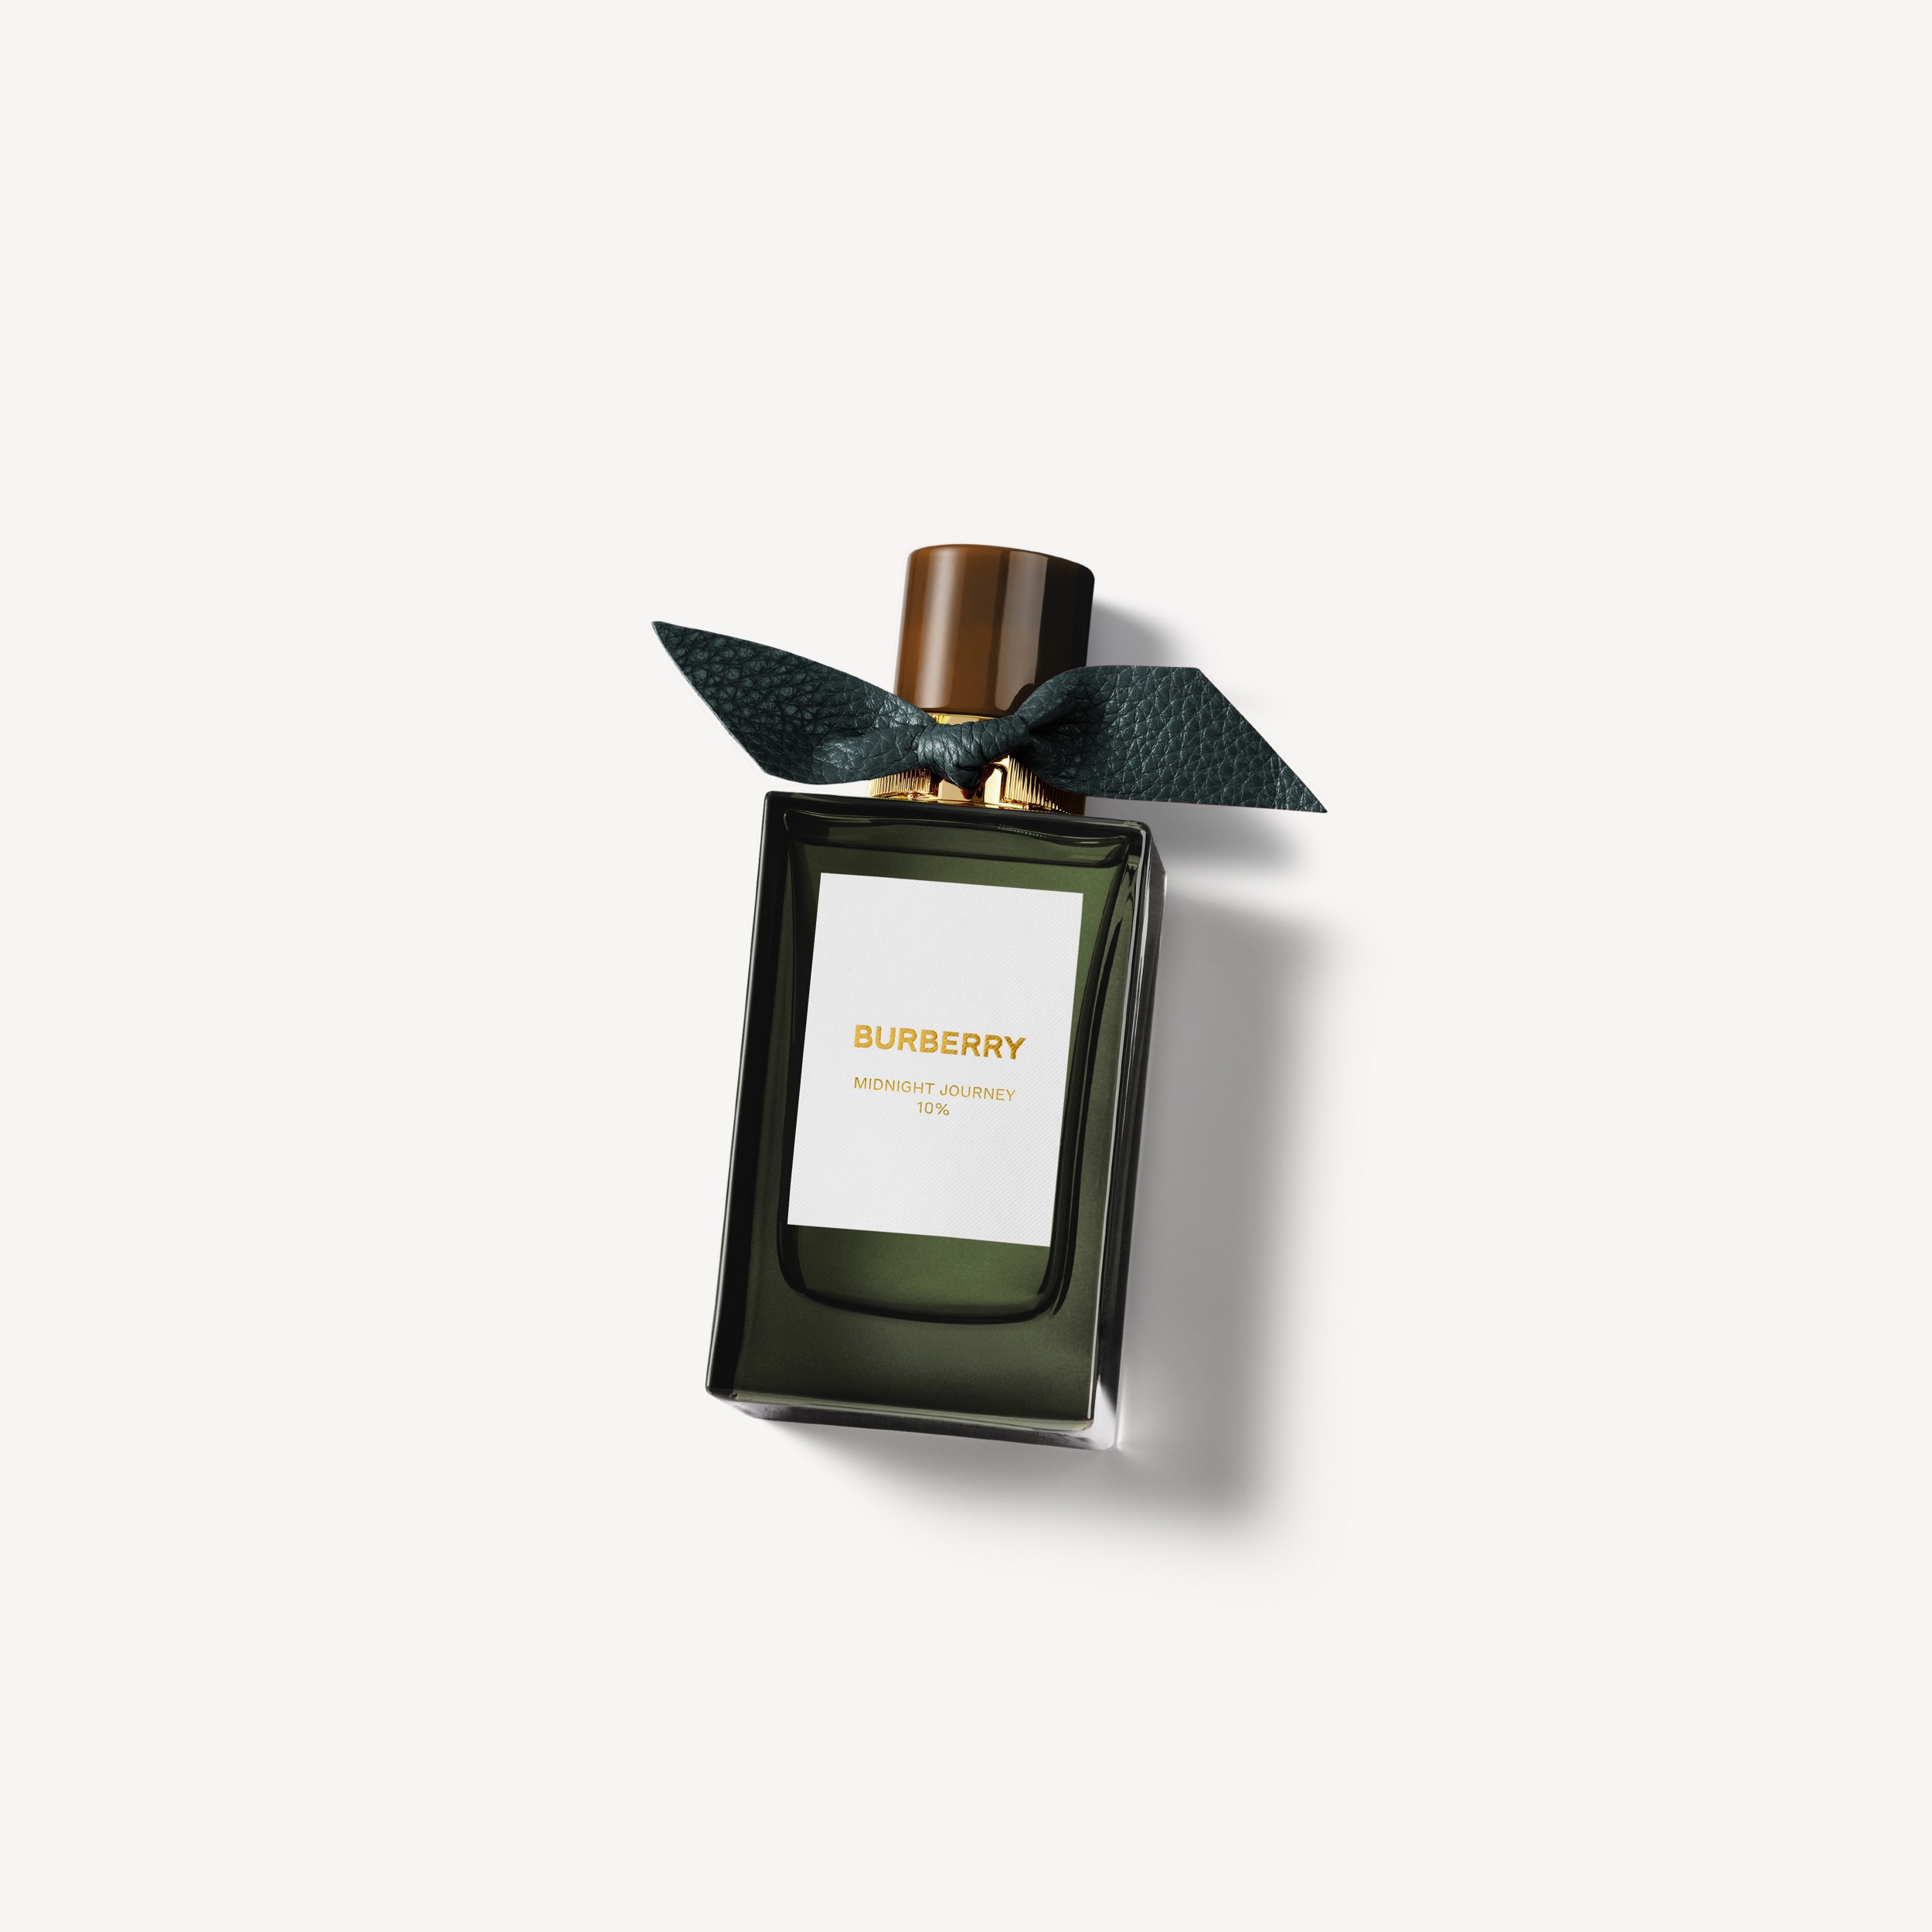 Burberry Signatures Eau de Parfum de 100 ml - Midnight Journey | Burberry® oficial - 1